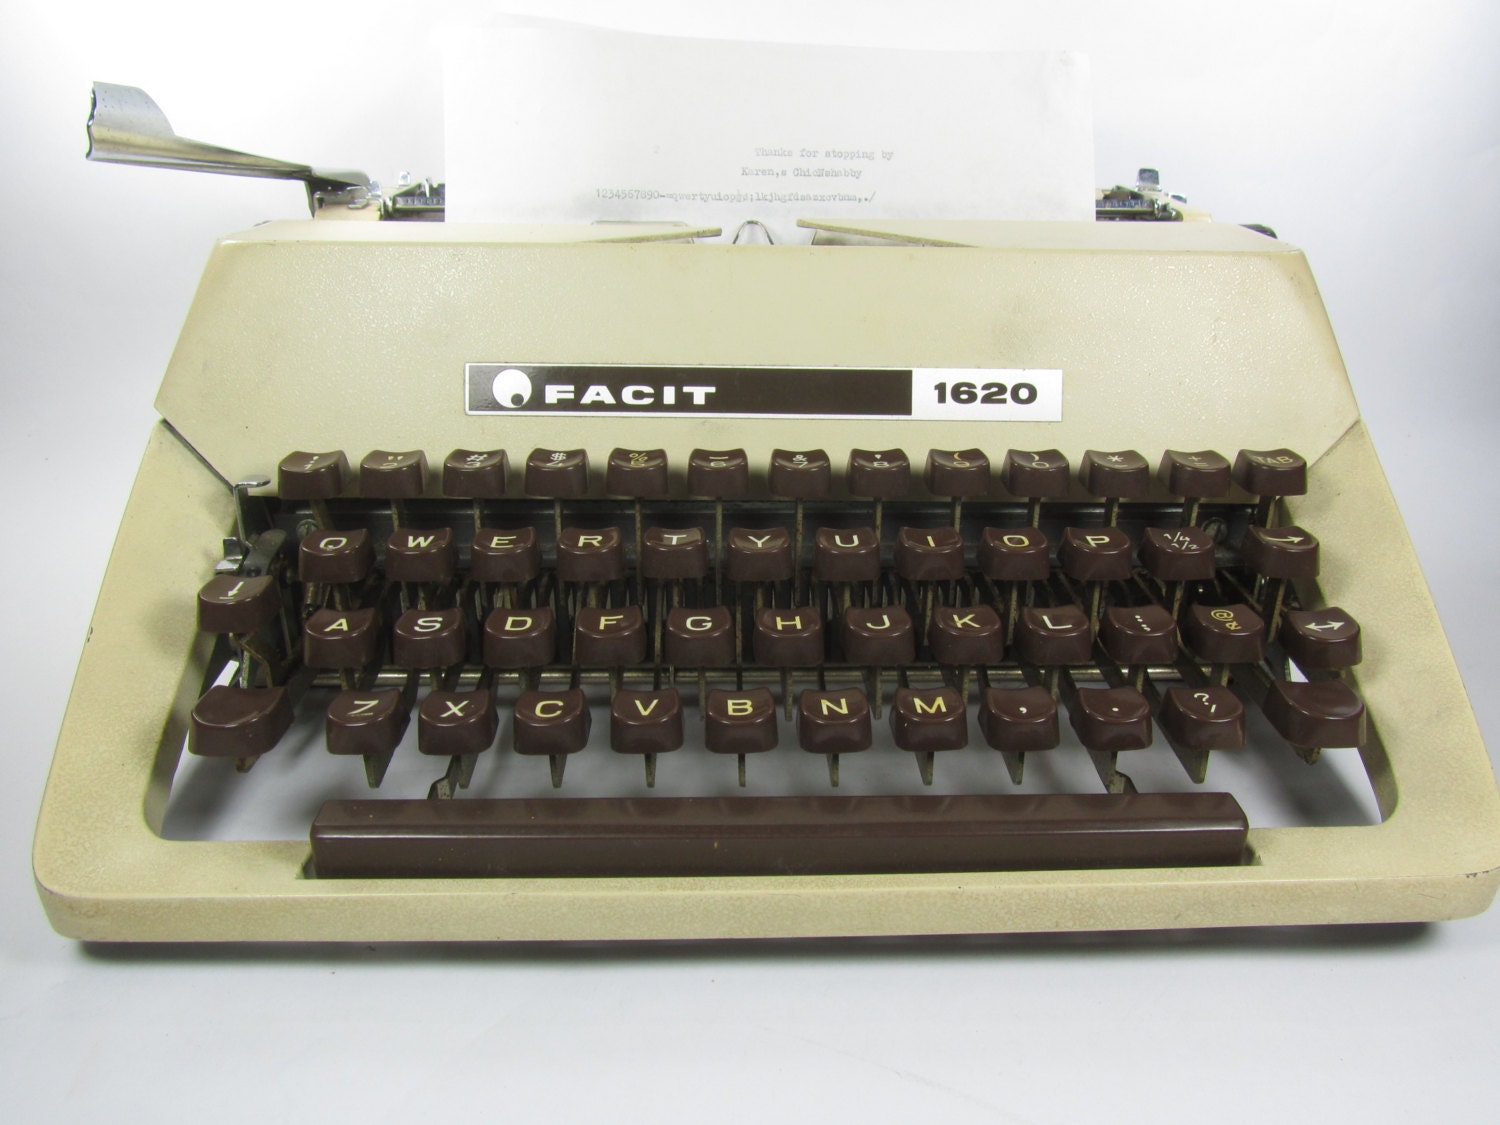 Facit typewriter manual